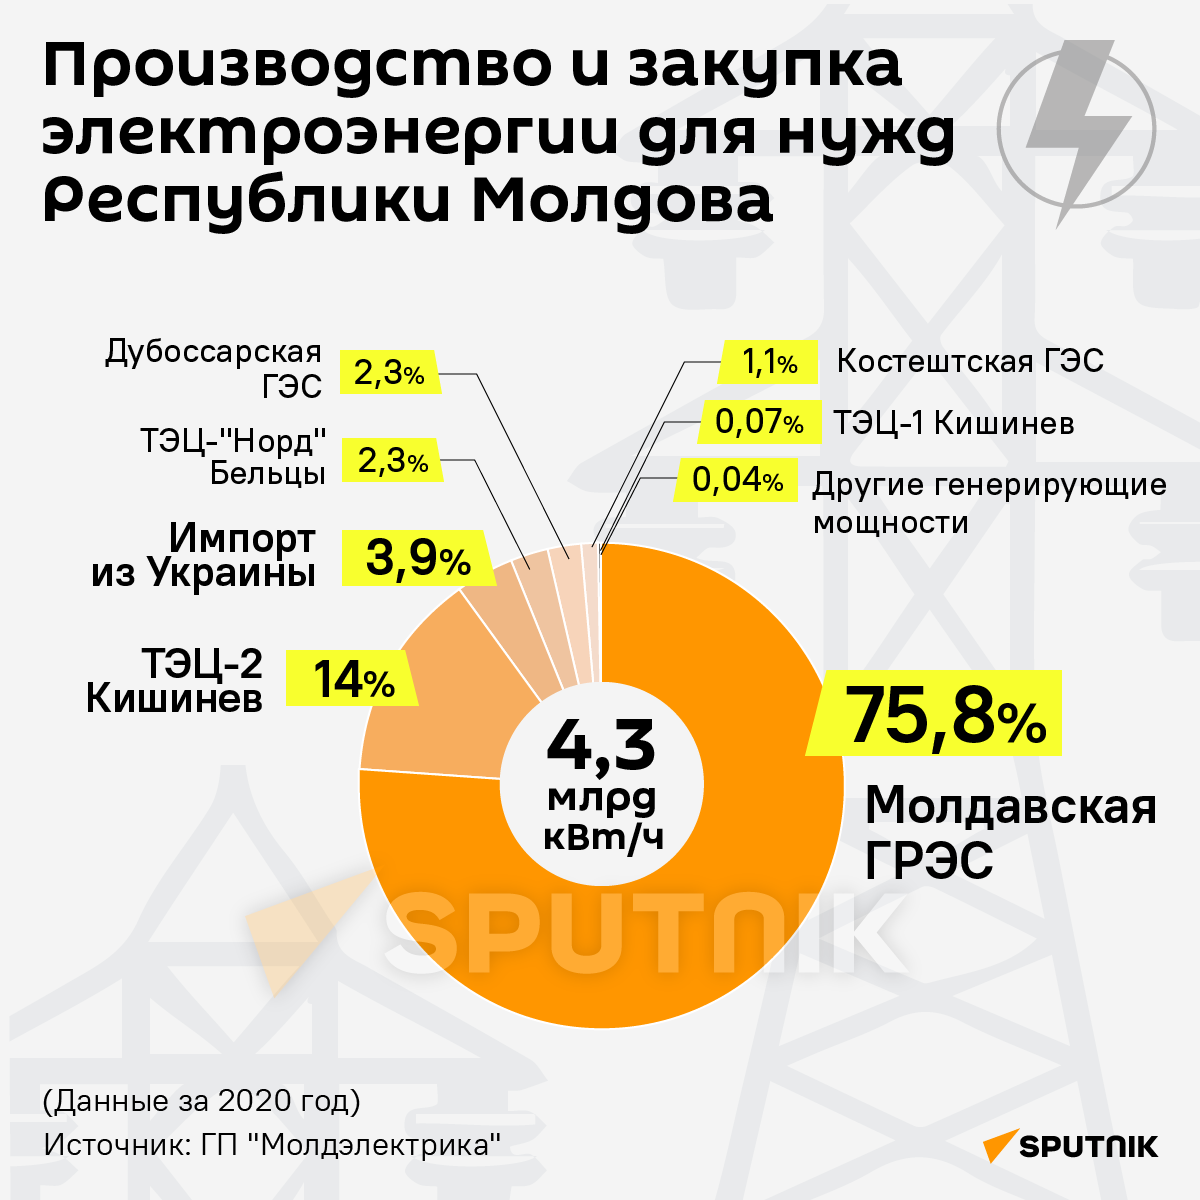 Производство и закупка электроэнергии для нужд Республики Молдова - Sputnik Молдова